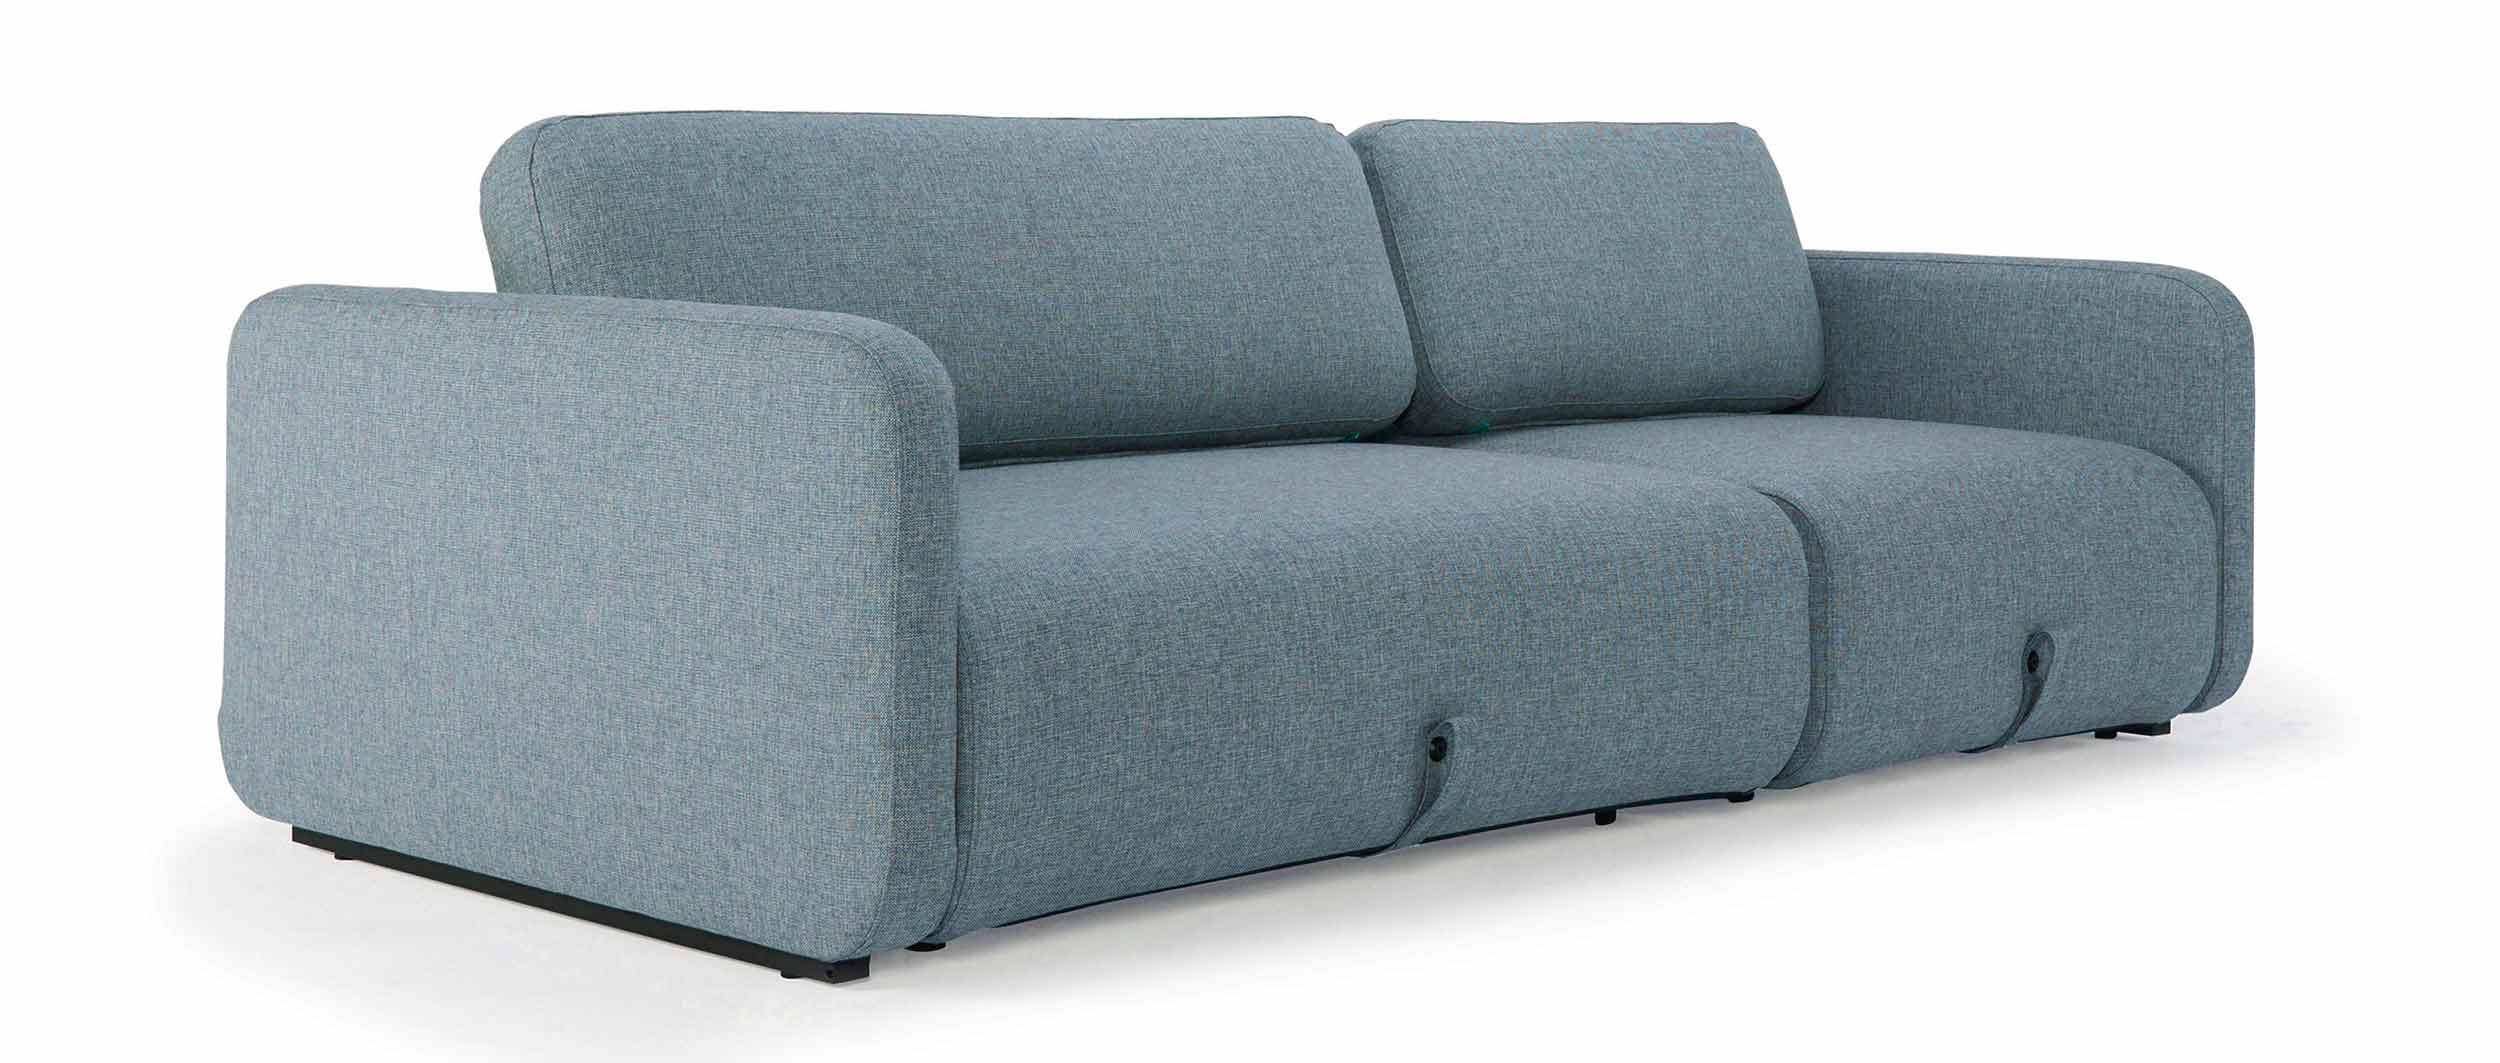 blaues Innovation Schlafsofa VOGAN Lounge Sofa mit Armlehnen, L-Sofa mit Longchair - Liegefläche 120x200